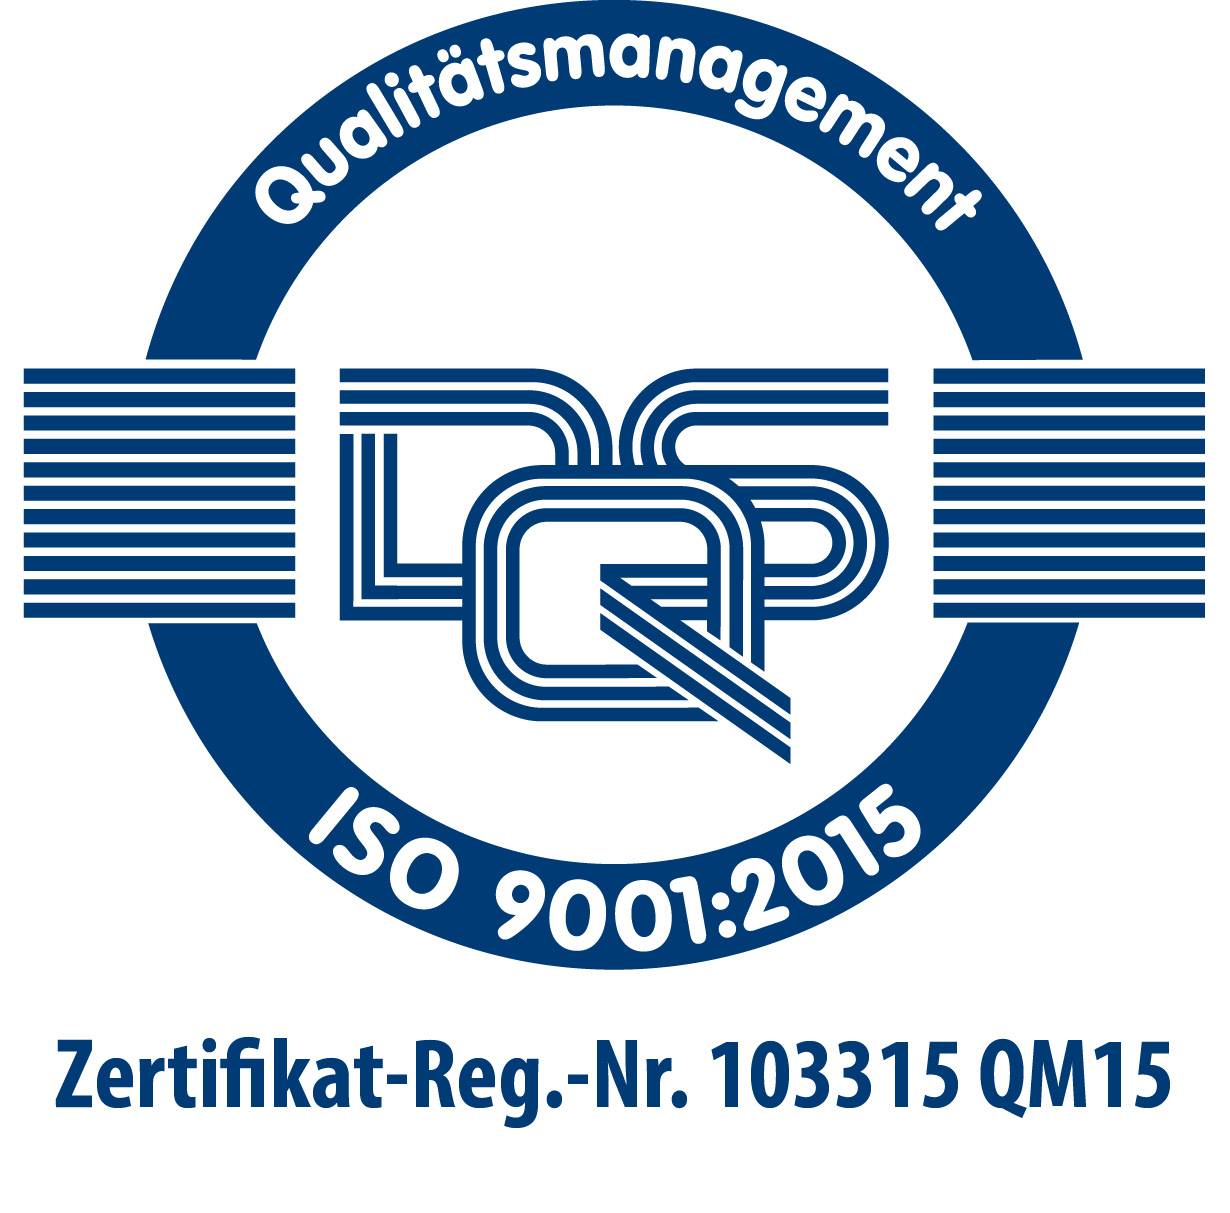 DQS Zertifikat-Reg.-Nr. 103315 QM15 